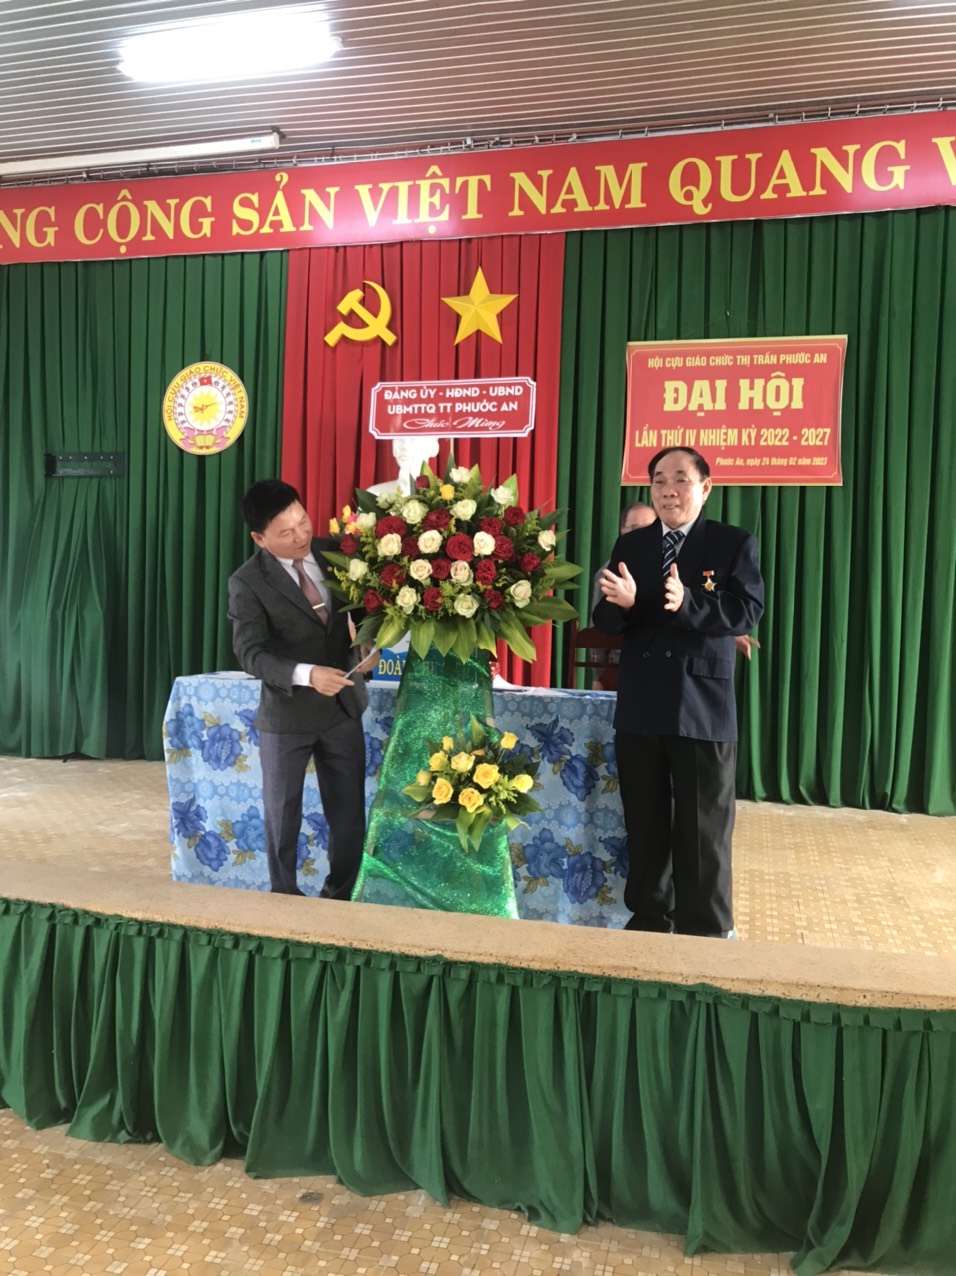  Hội Cựu giáo chức thị trấn Phước An tổ chức Đại hội lần thứ IV, nhiệm kỳ 2022-2027 